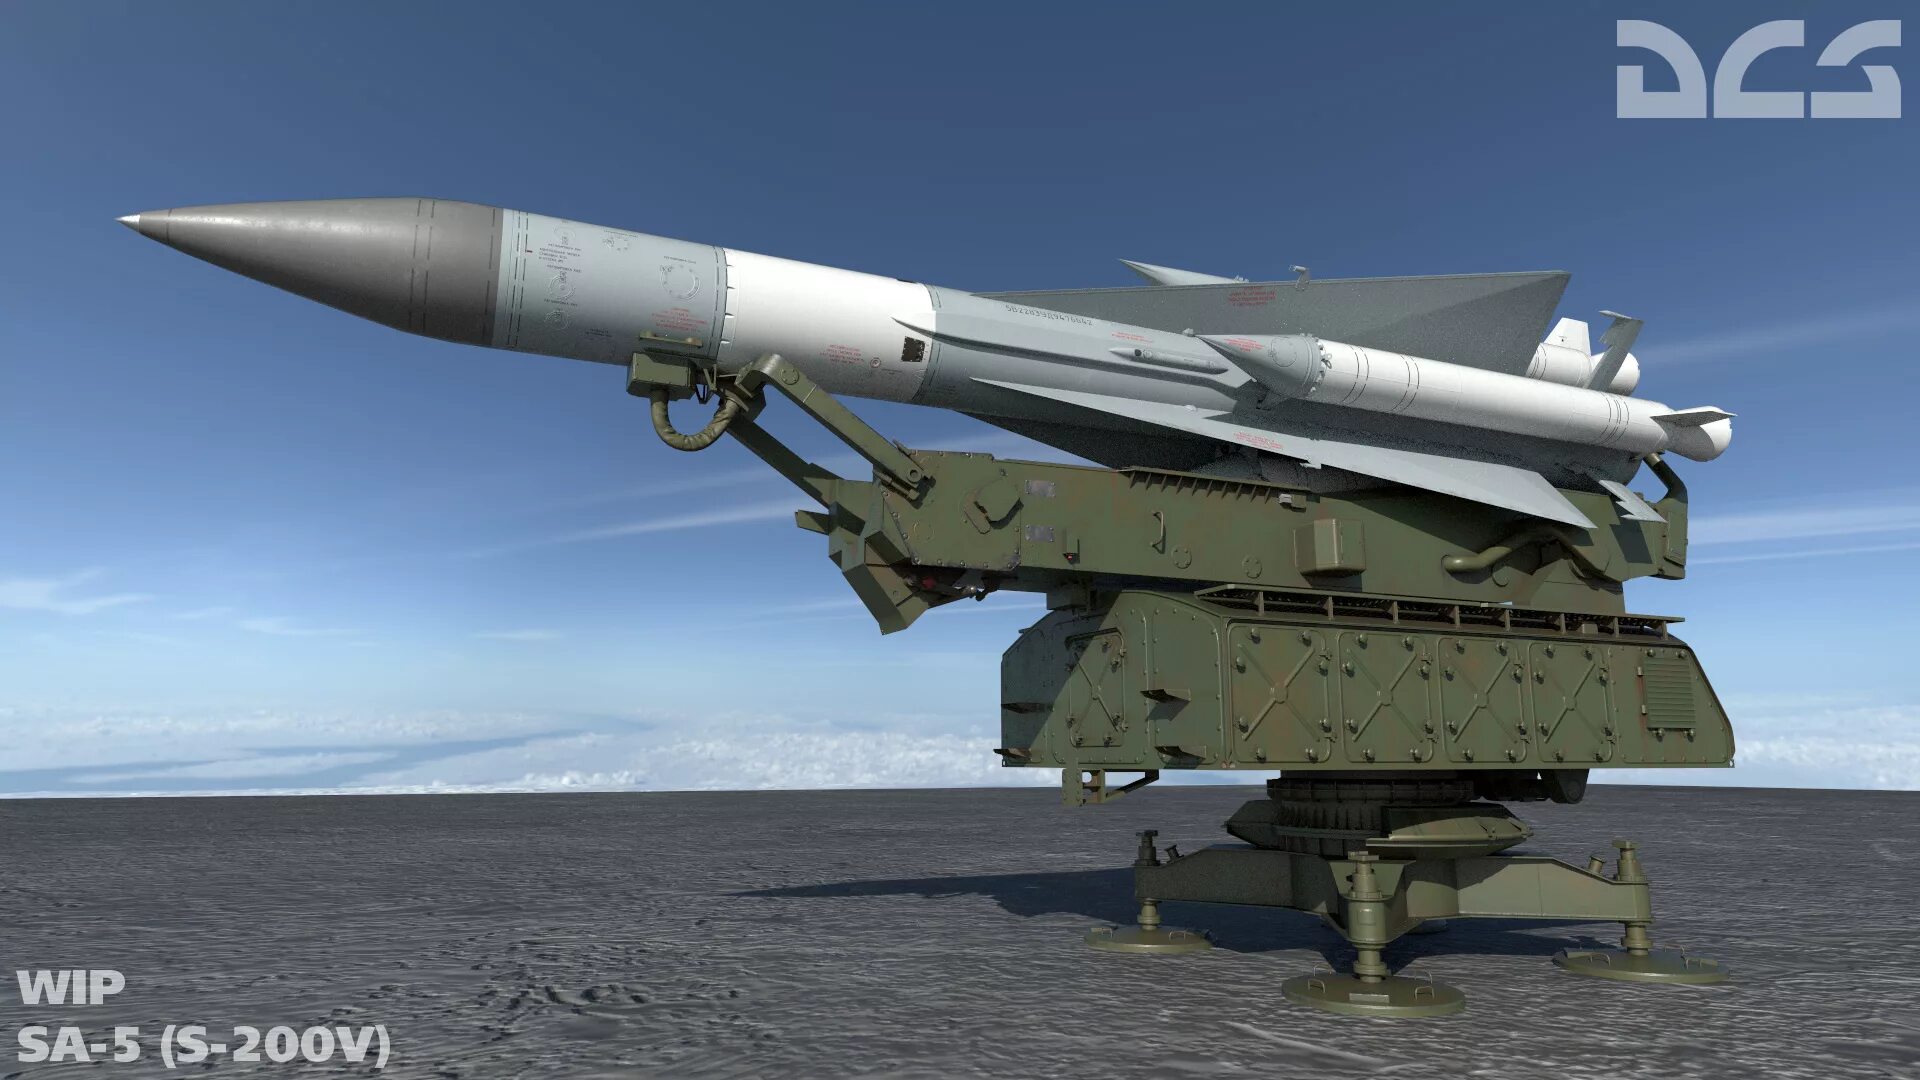 Ракета с 200 вес. С200 ракеты ПВО. ЗРК С-200 «Ангара», «Вега», «Дубна». ЗРК С-200 Ангара. 200 Комплекс ПВО.